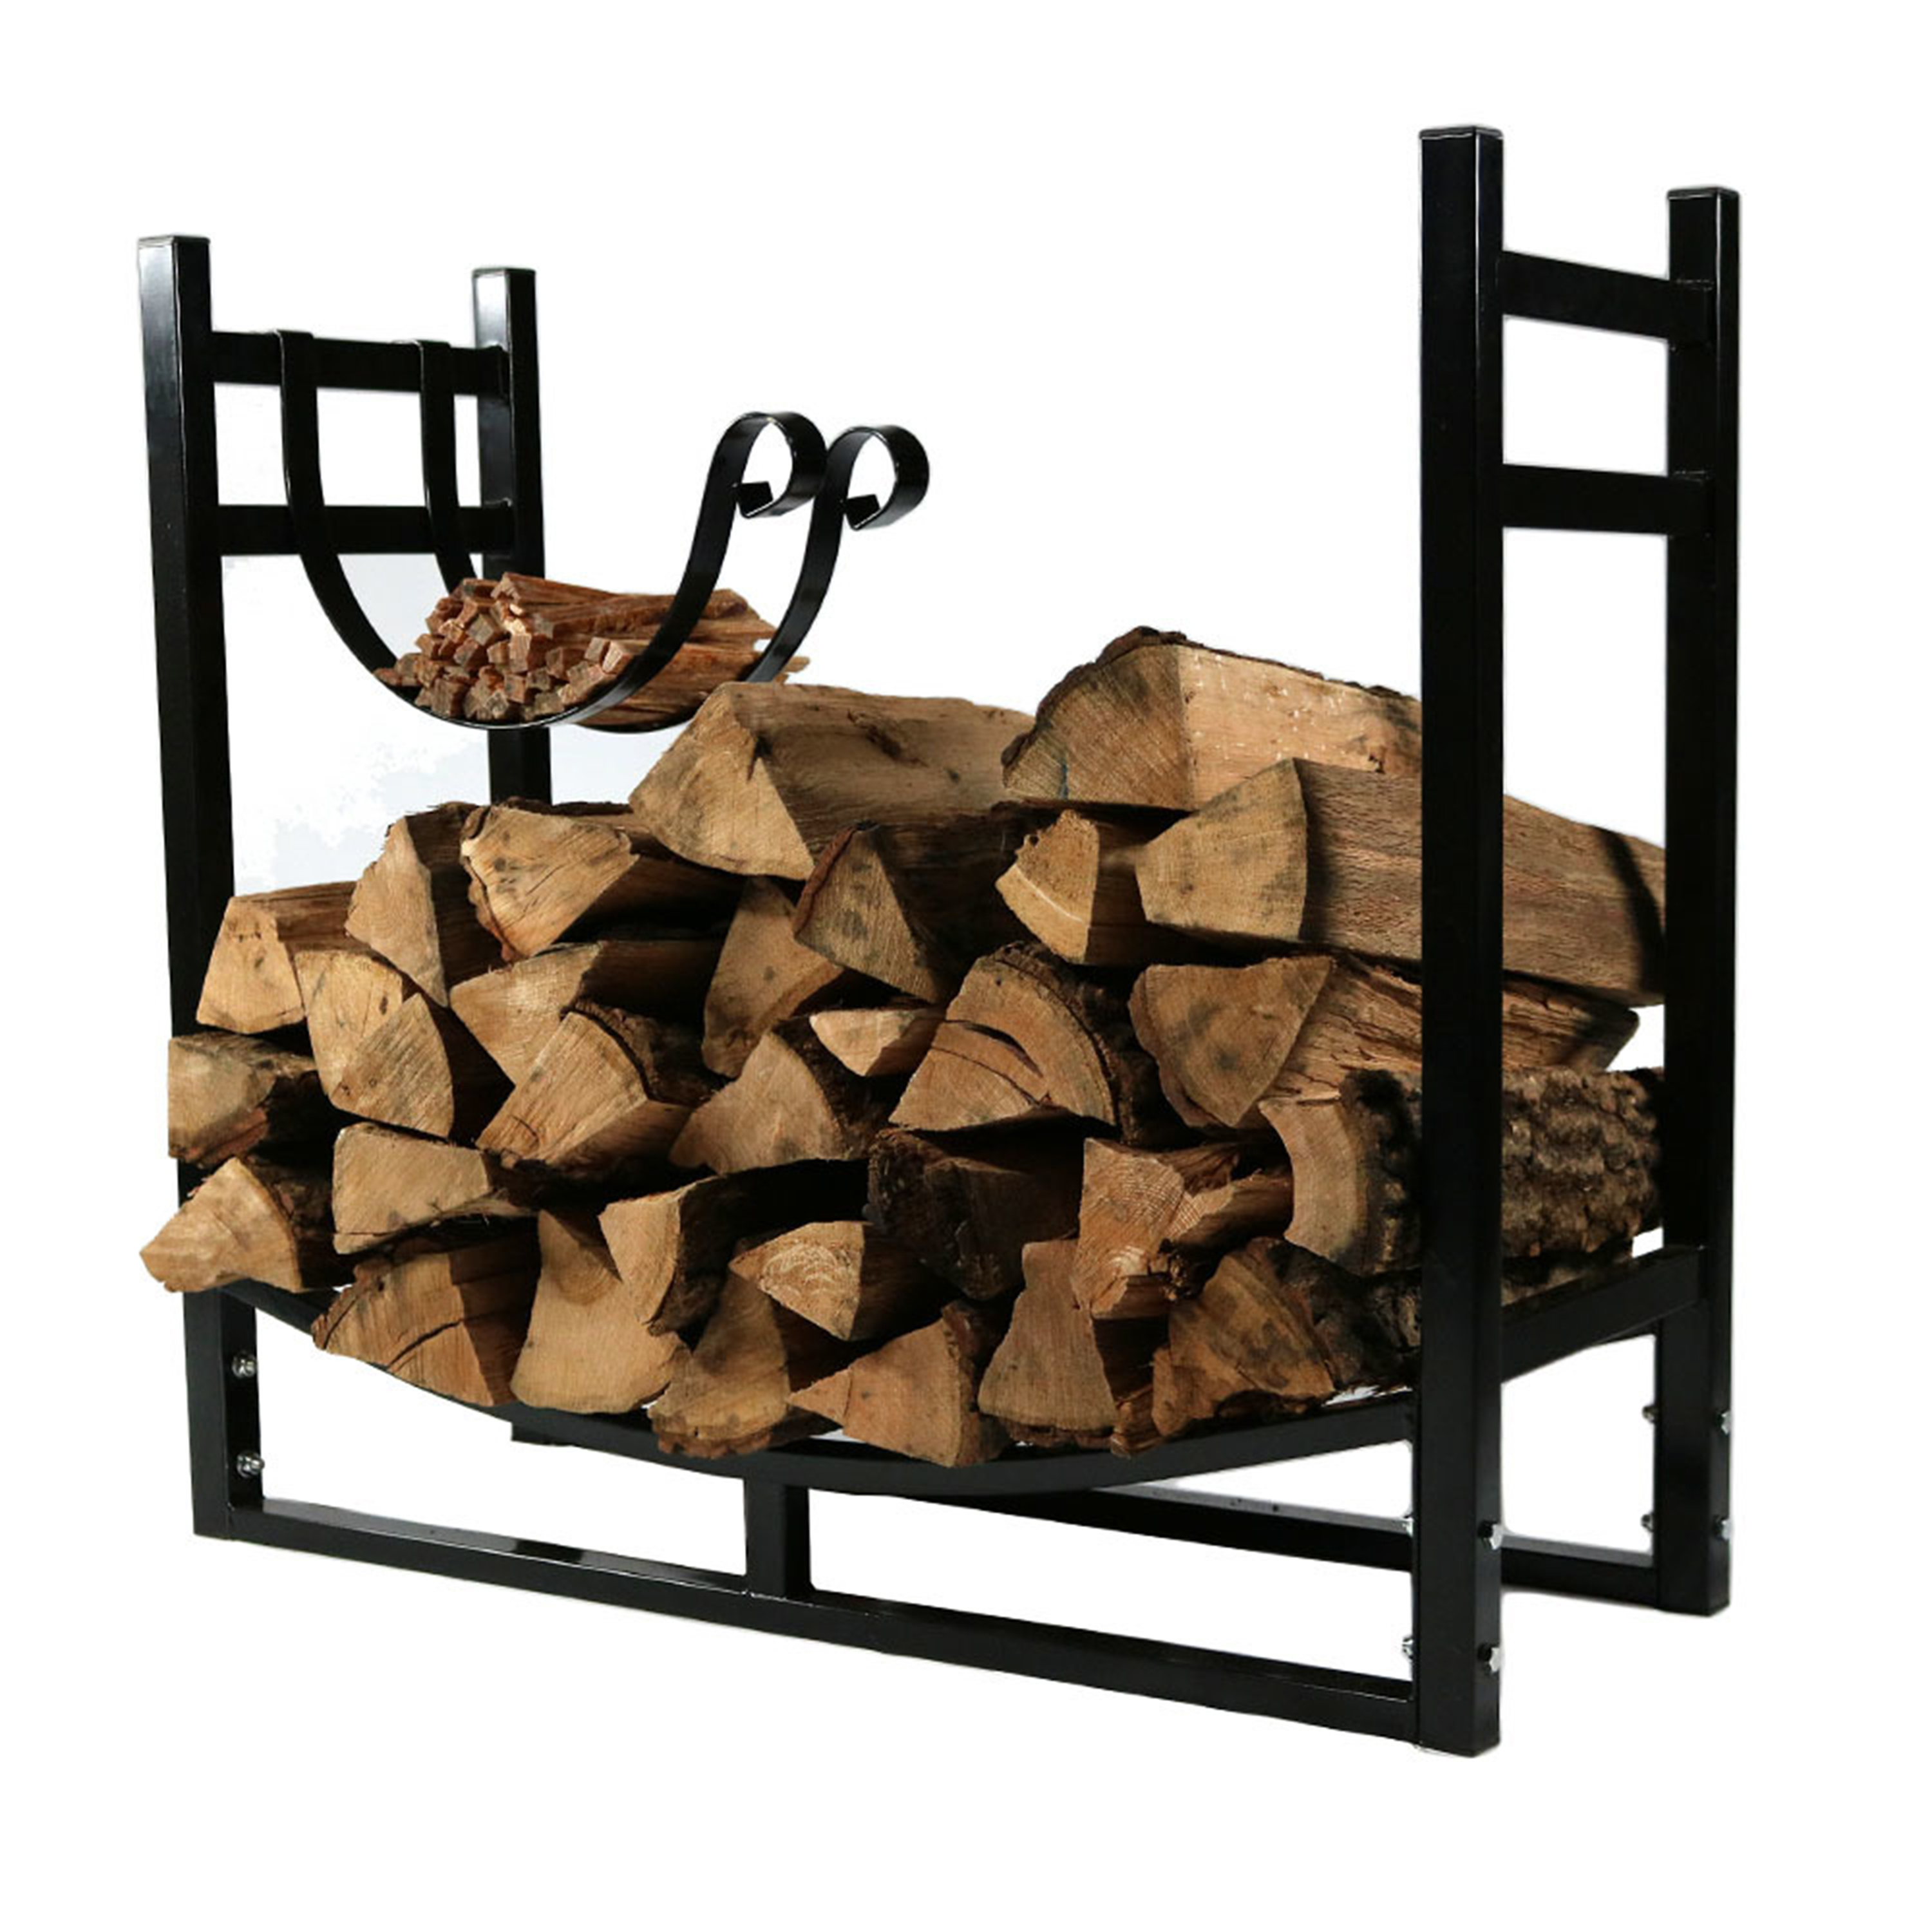 Sunnydaze Indoor/Outdoor Firewood Log Rack with Kindling Holder, Black